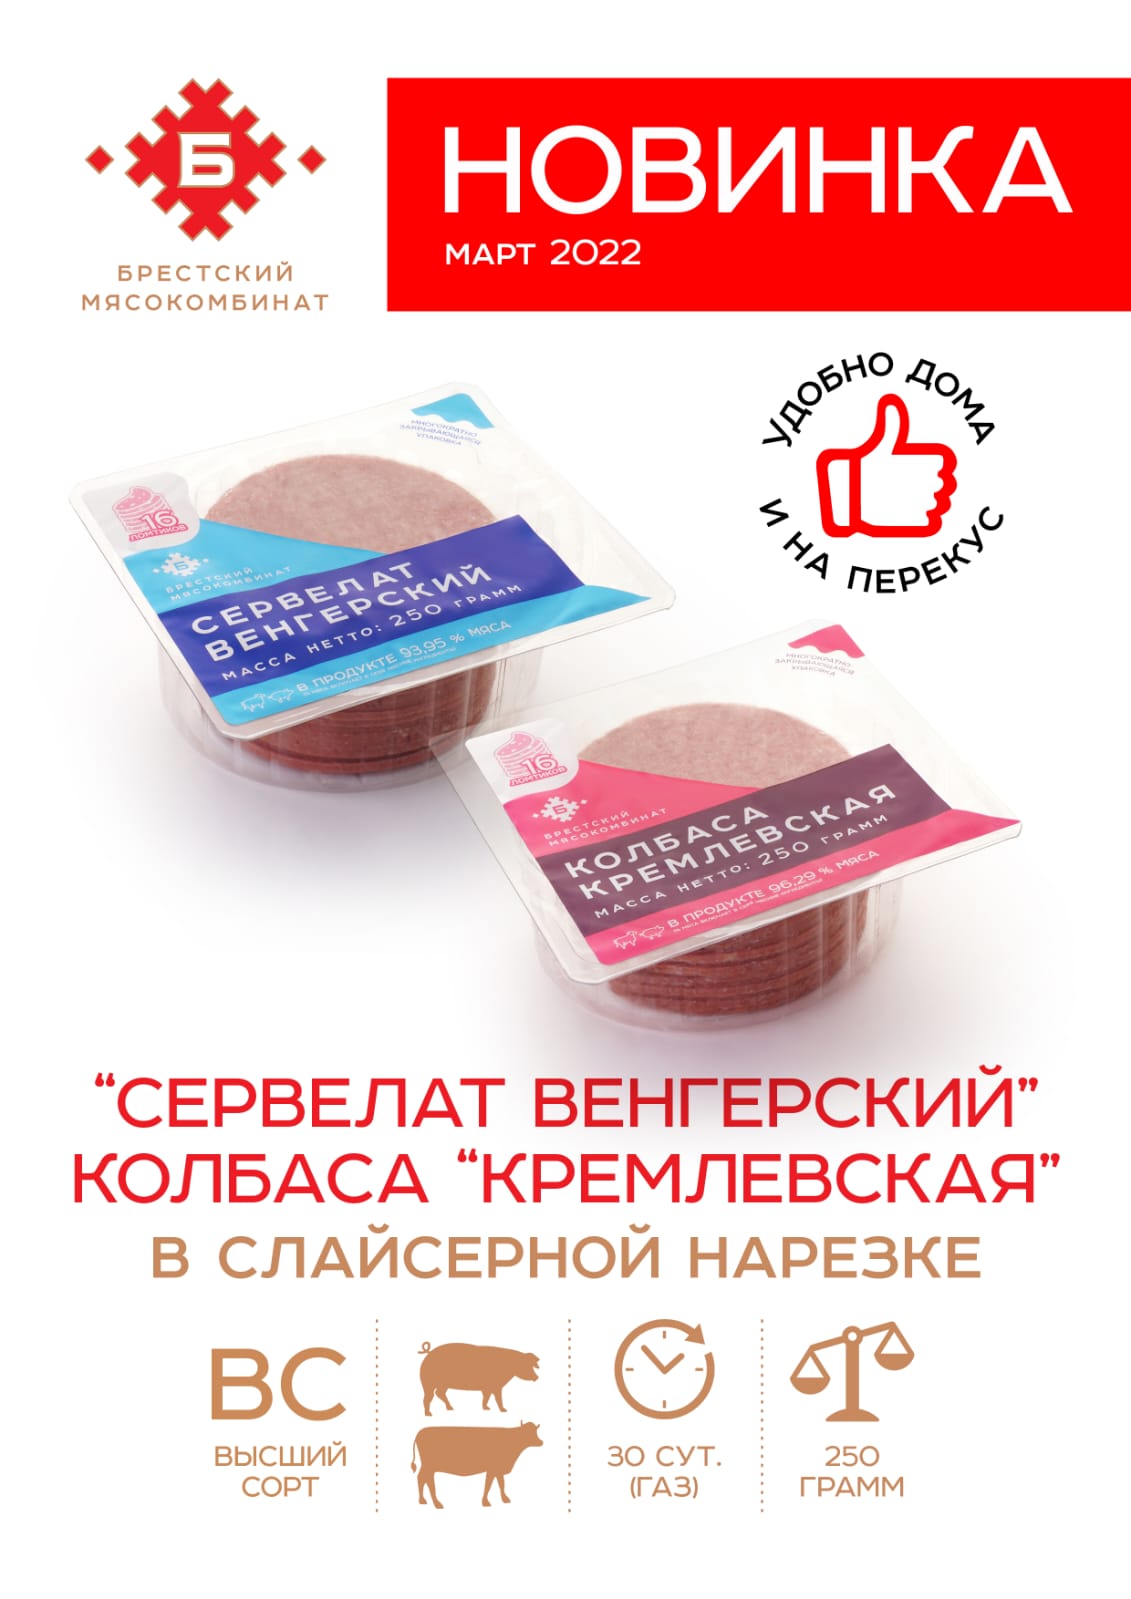 Колбаса "Кремлёвская" | Интернет-магазин Gostpp